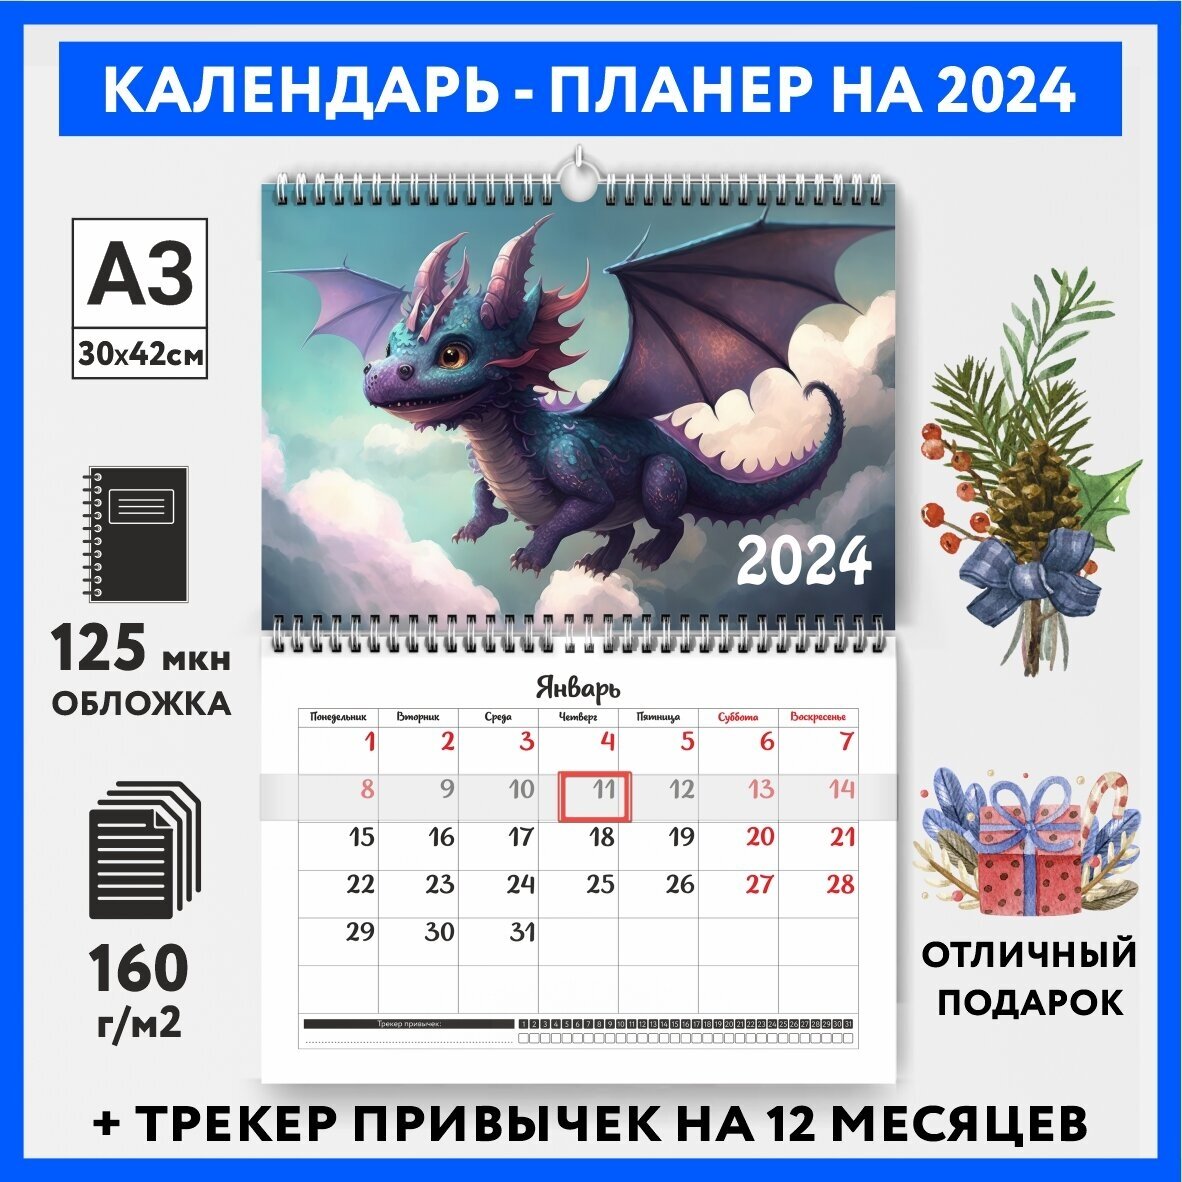 Календарь-планер А3 настенный с трекером привычек, символ года на 2024 год, Дракон #000 - №13, calendar_wall_dragon_#000_A3_13